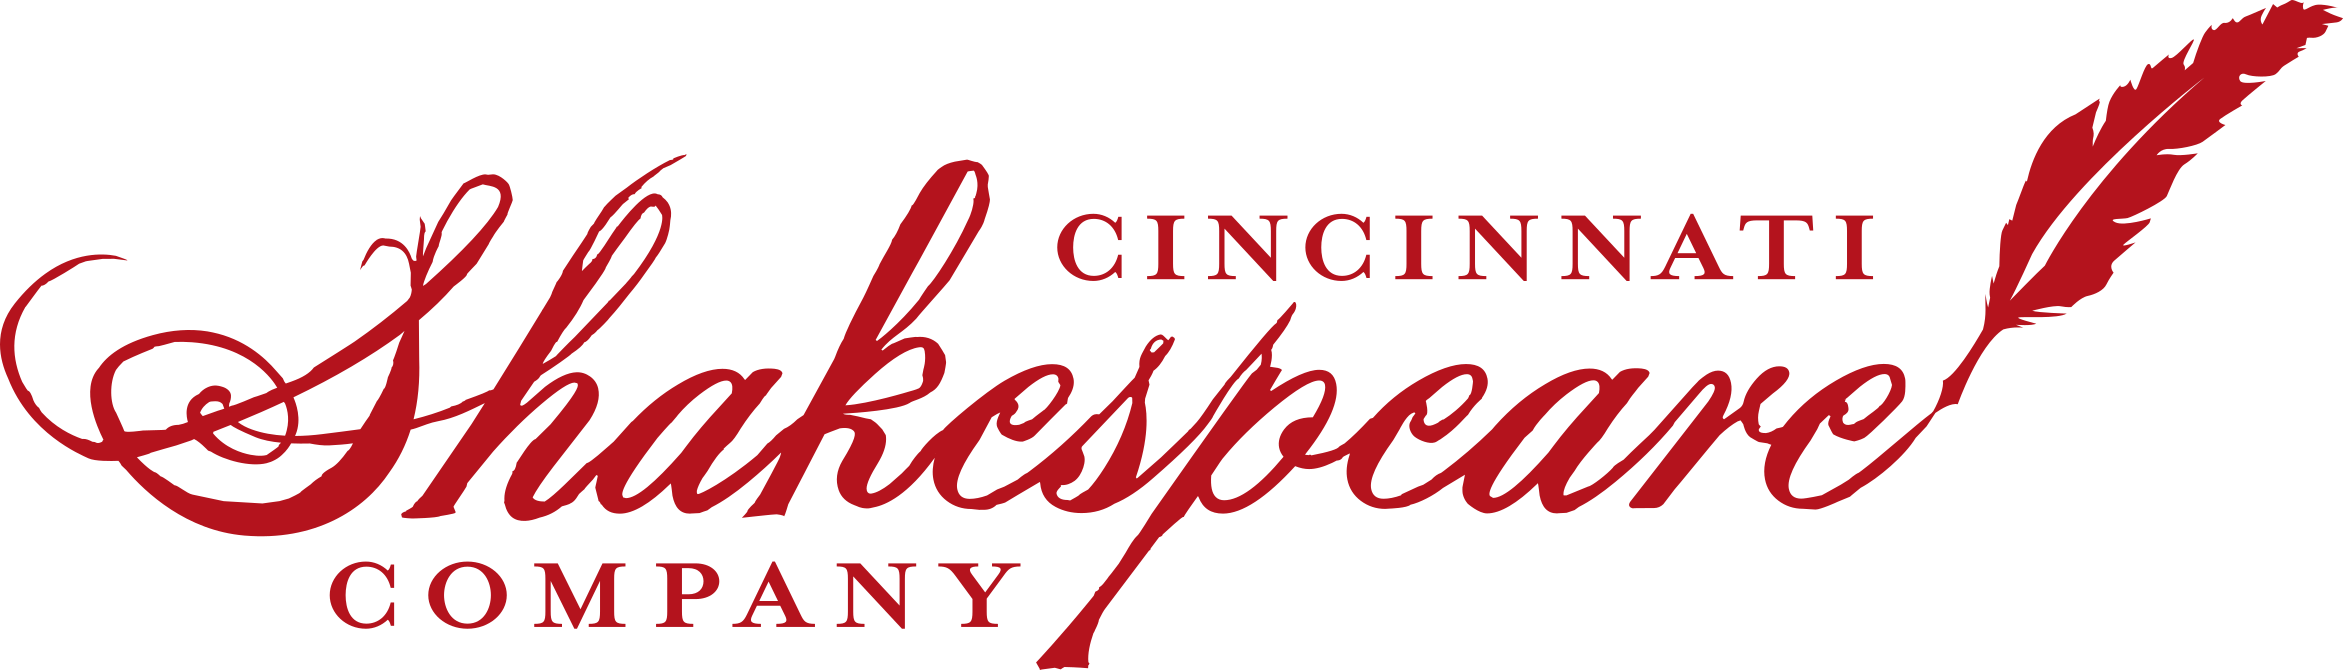 Cincinnati Shakespeare Company logo